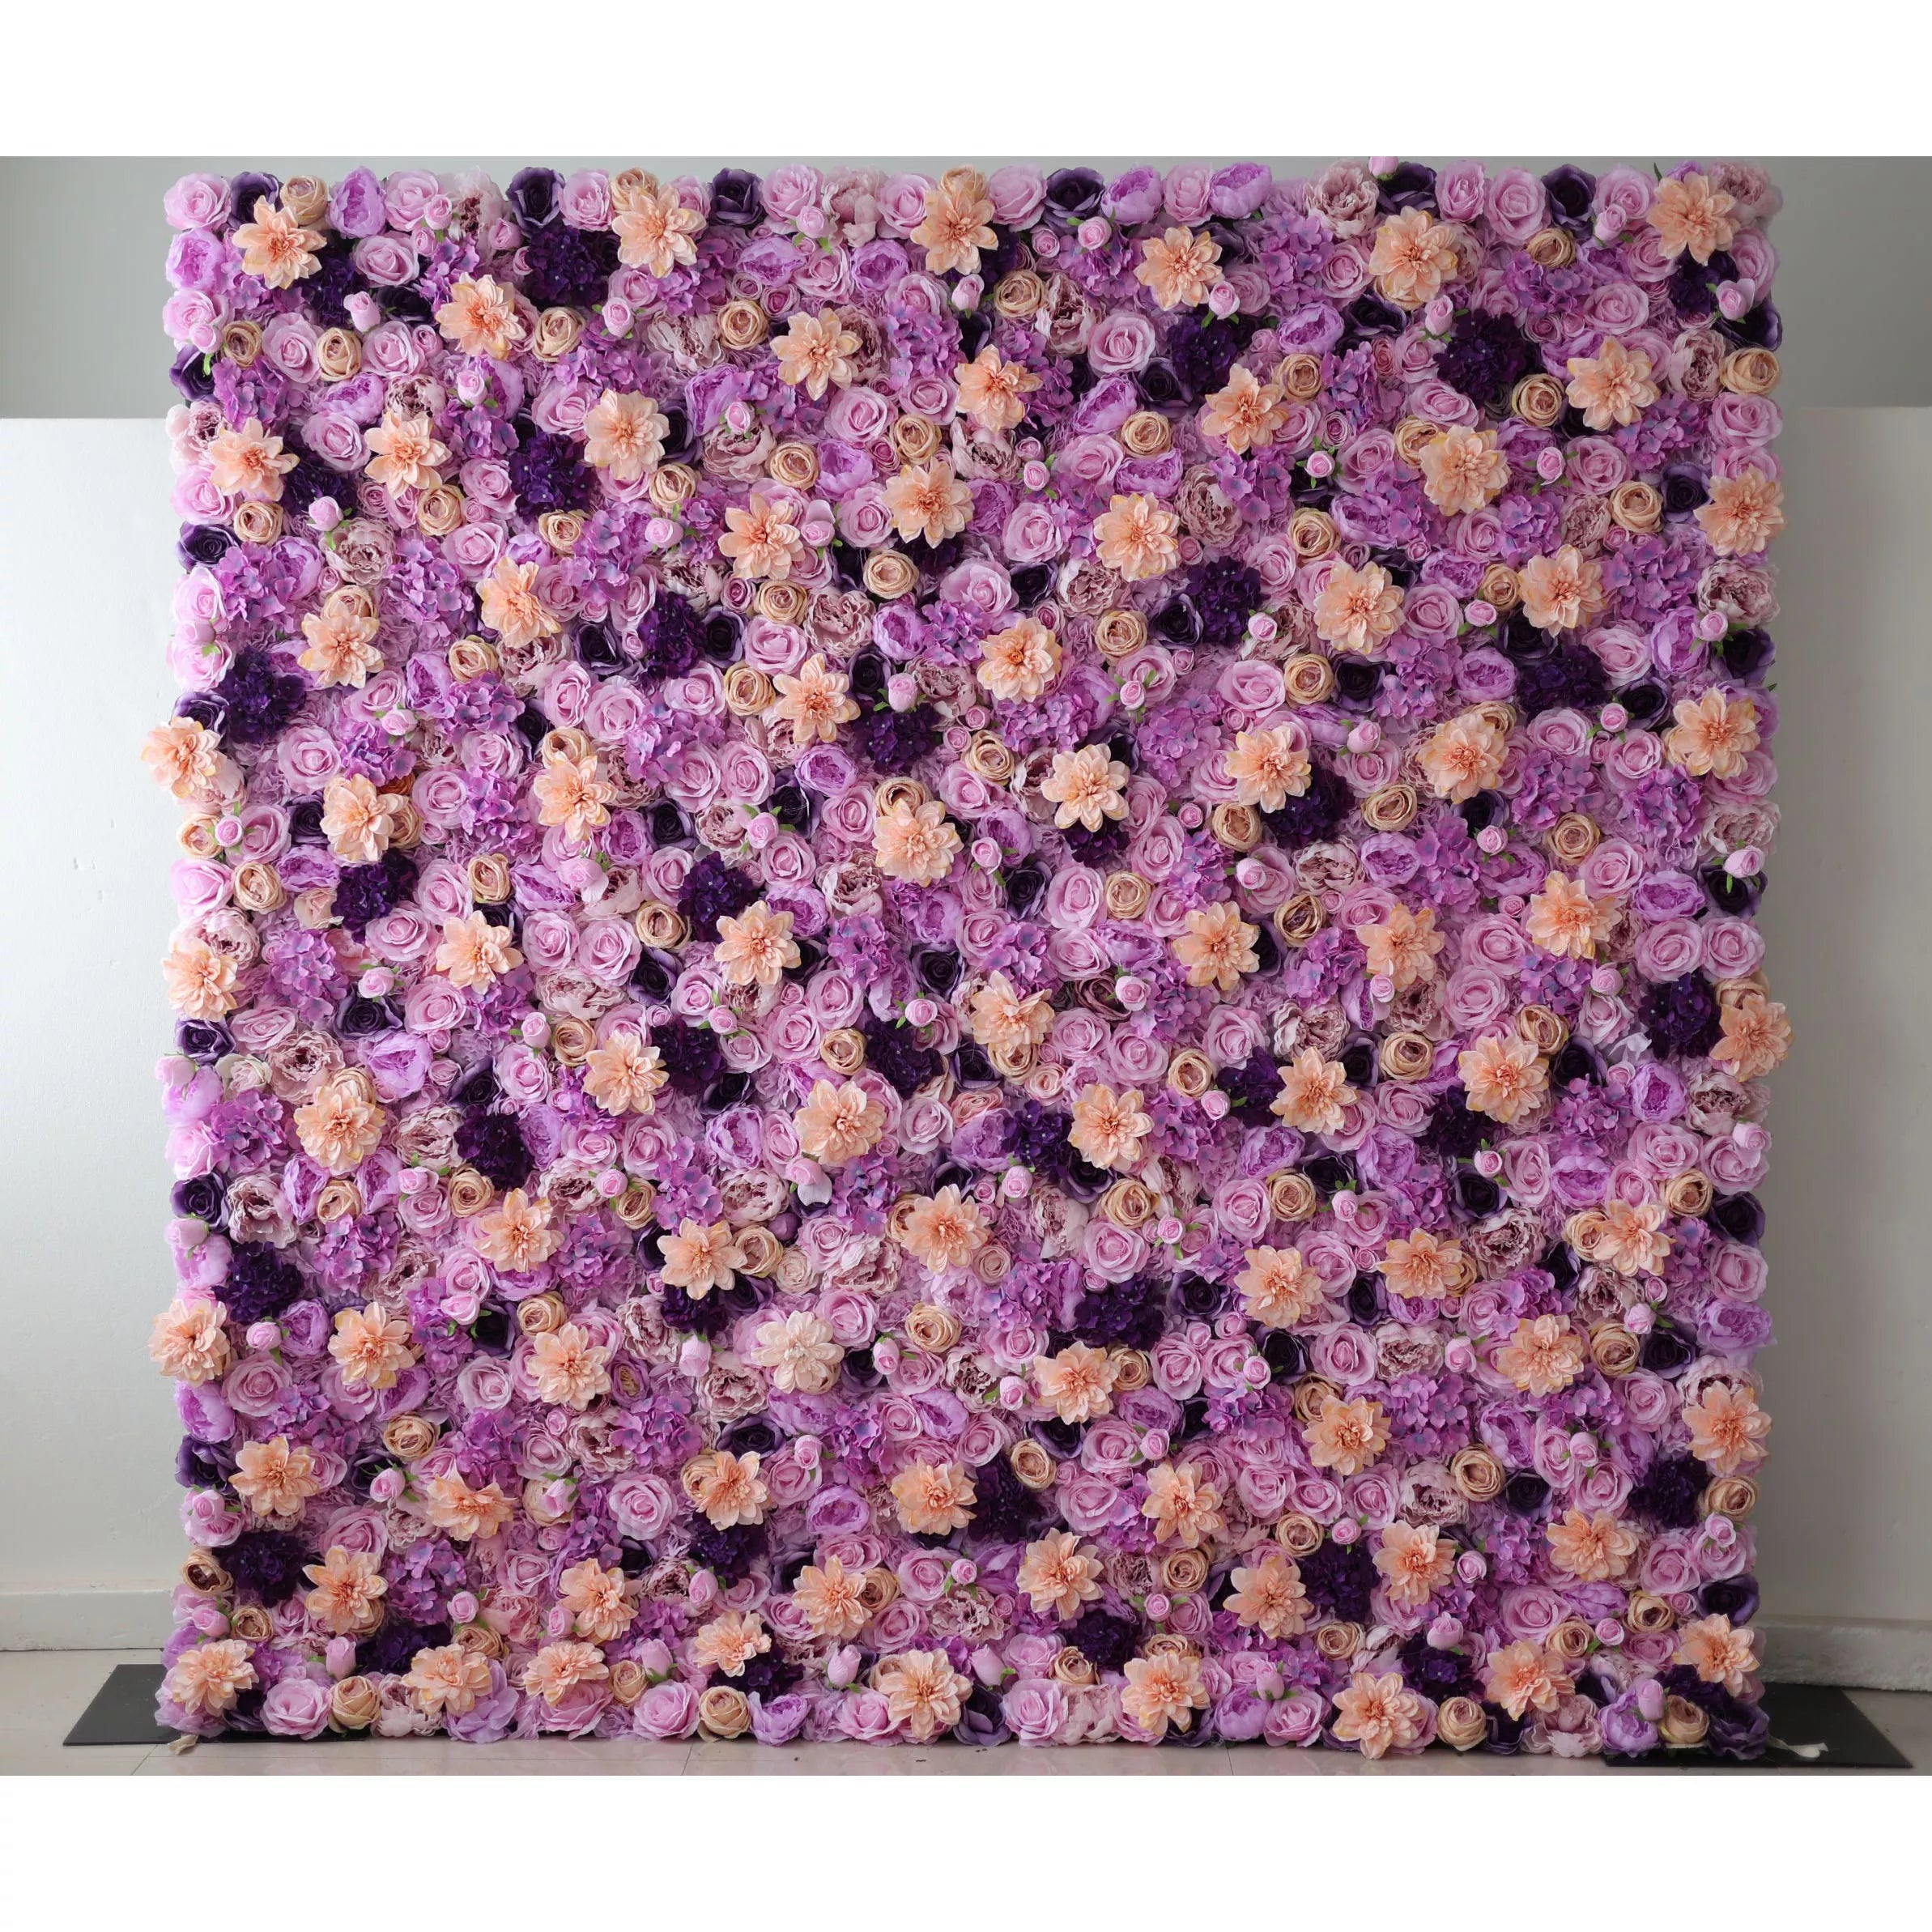 زهور فالار اللافندر دريمسكيب: سيمفونية خصبة من أزهار البنفسج والخوخ-أناقة قصوى في الأزهار